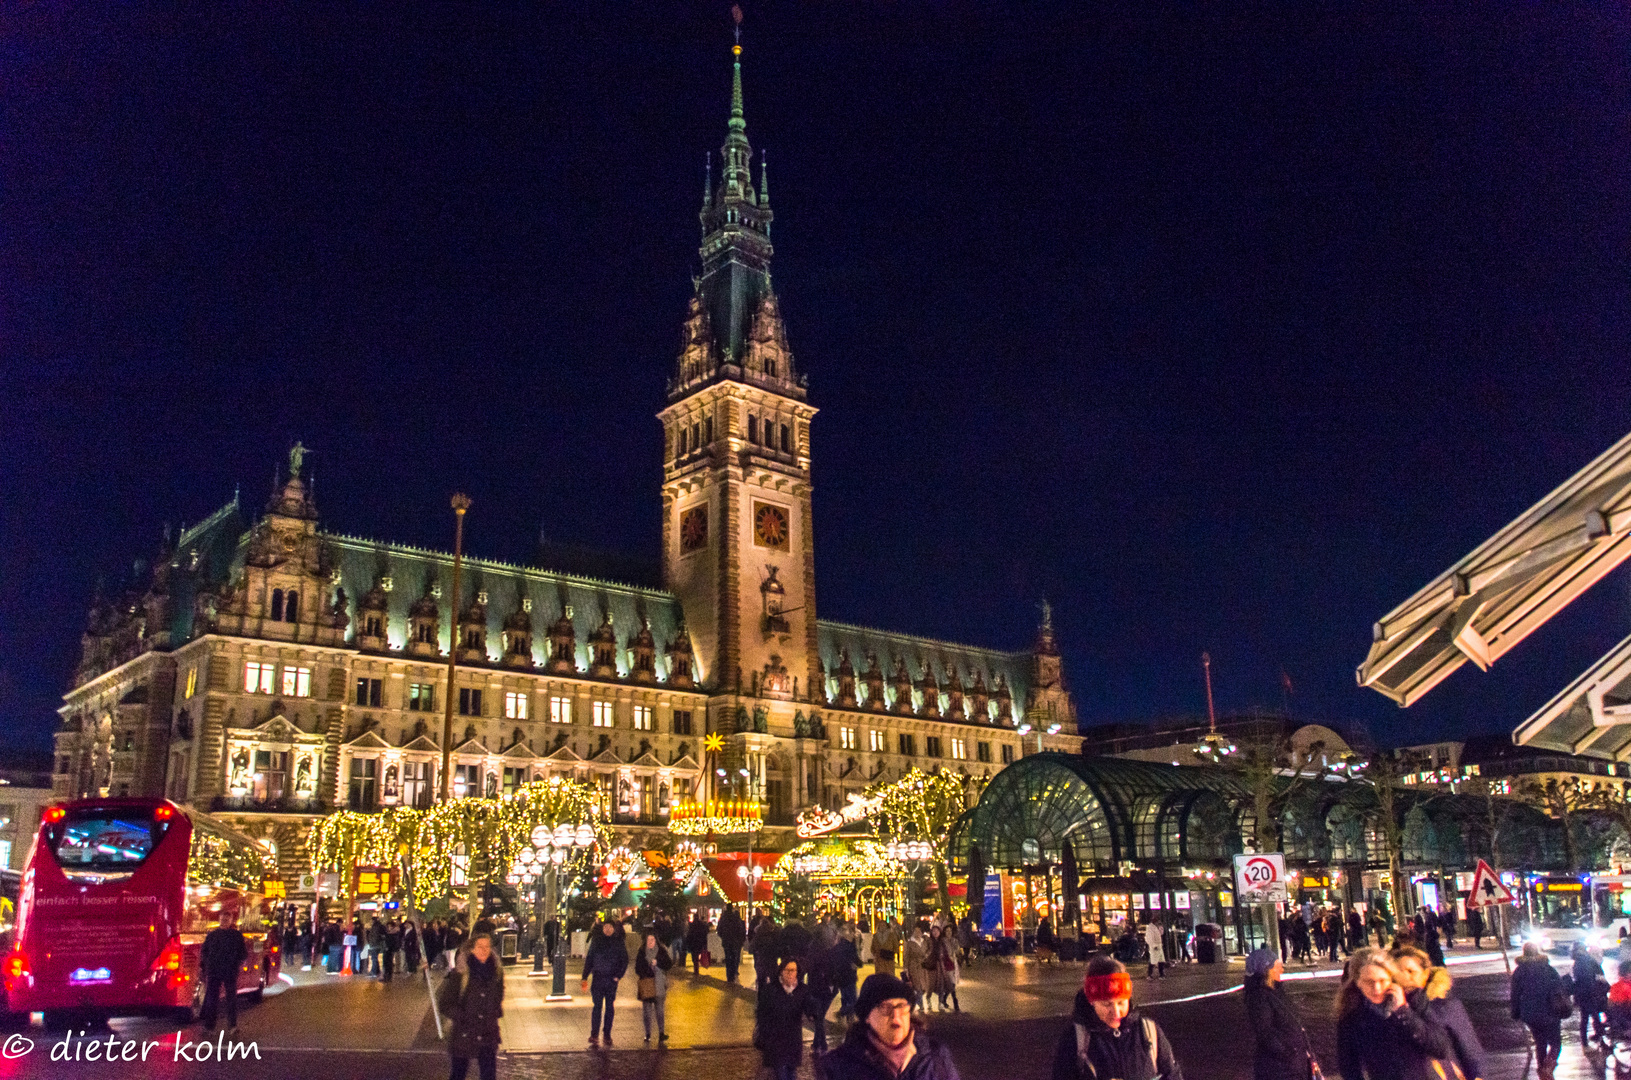 Hamburger Ansichten - Rathaus und Weihnachtsmarkt